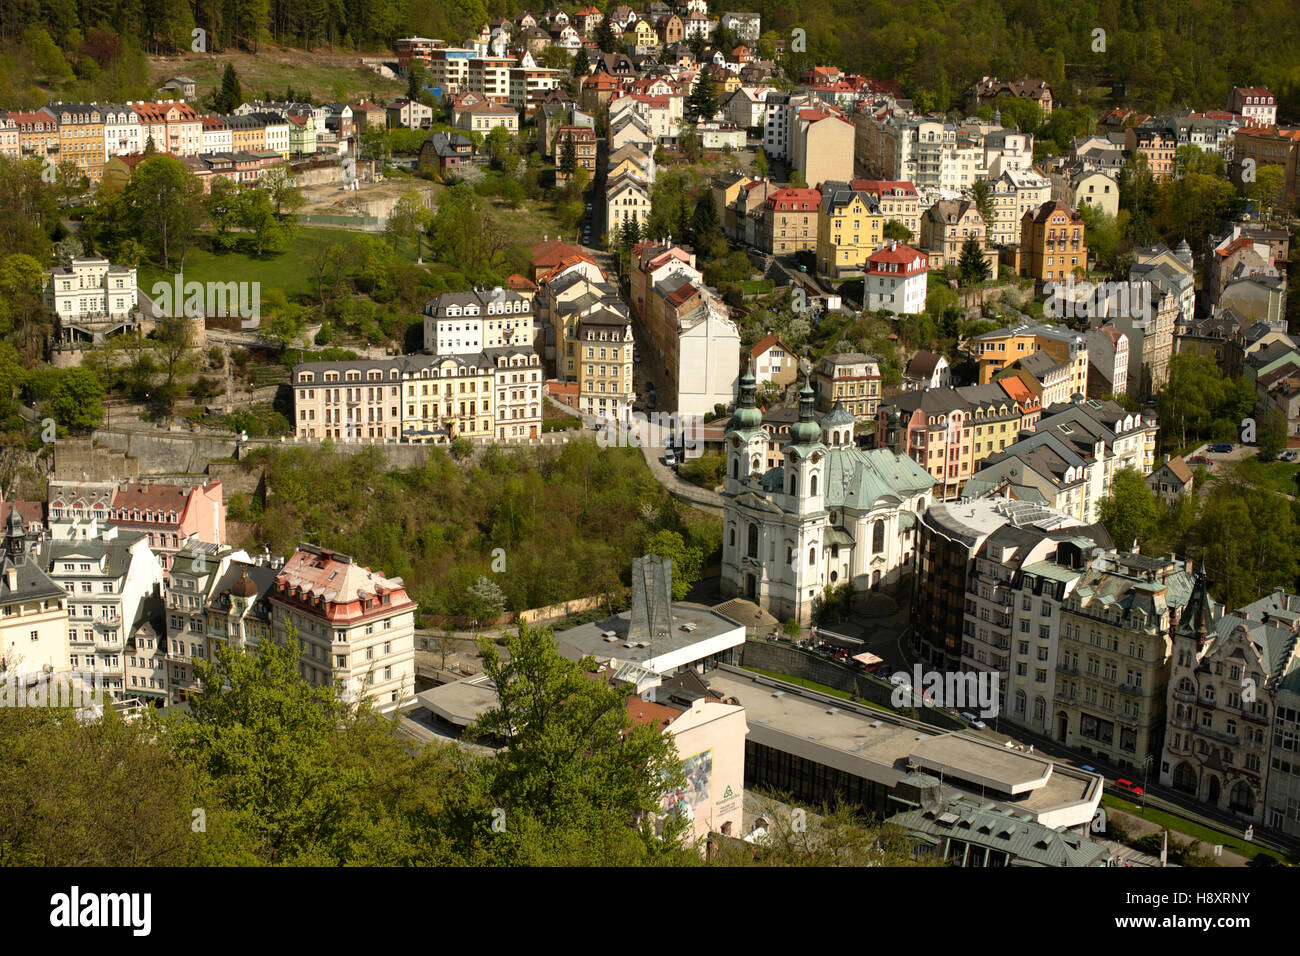 Avis de Karlovy Vary de Jelení skok, spring colonnade, Marie Madeleine, l'église baroque de Bohême de l'Ouest, République Tchèque, Europe Banque D'Images